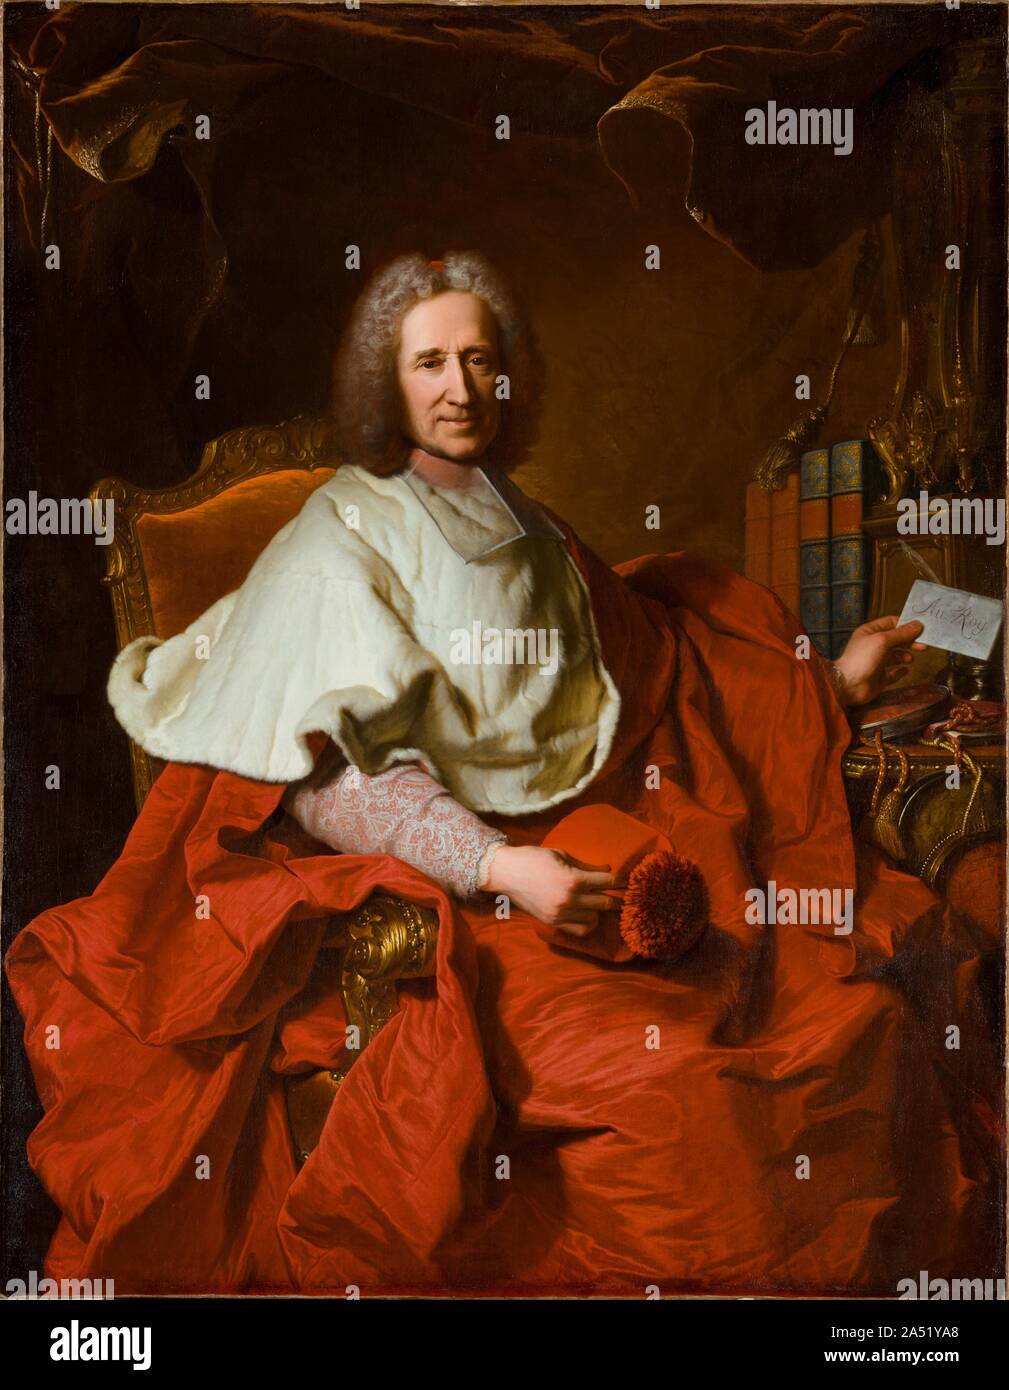 Portrait du Cardinal Guillaume Dubois, 1723. Avec son luxe, robe flamboyant&# x2014;un volumineux pack de soie écarlate surmonté d'une courte cape fourrure&# x2014;l'objet d'Hyacinthe Rigaud&# x2019;s portrait a été clairement un homme de conséquence. Guillaume Dubois a gagné la faveur de Louis XIV comme tuteur de son neveu, Philippe Charles, duc d'Orl&# xe9;que ans, et a servi comme ministre principal de Louis&# x2019;s successeurs, le régent Duc d'Orl&# xe9;ans et Louis&# x2019;s arrière-petit-fils, Louis XV. Dubois a été nommé Cardinal de l'Église catholique en 1721, un noble aspiration au moins en partie motivés Banque D'Images